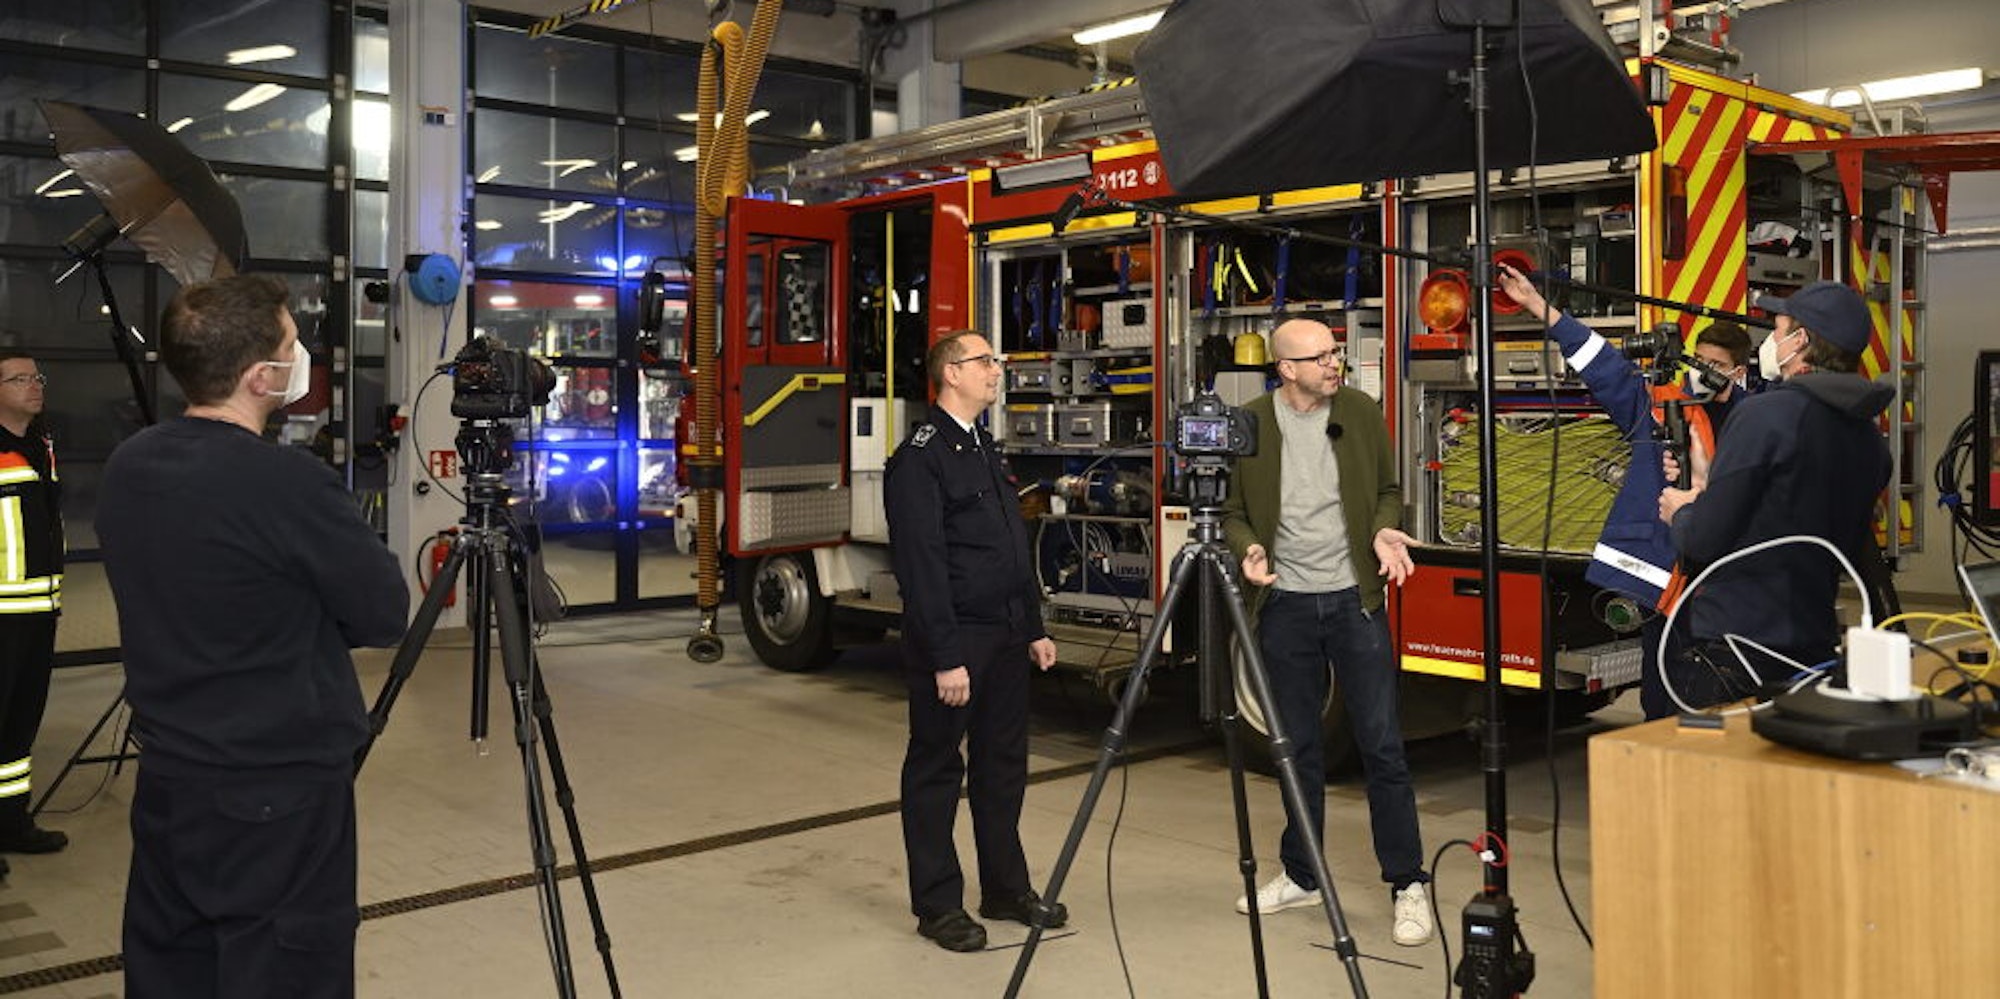 Das Feuerwehrhaus als Studio: Fernsehreporter Matthias Fiedler lässt sich Fahrzeuge und Material der Feuerwehr erklären. (Archivfoto)